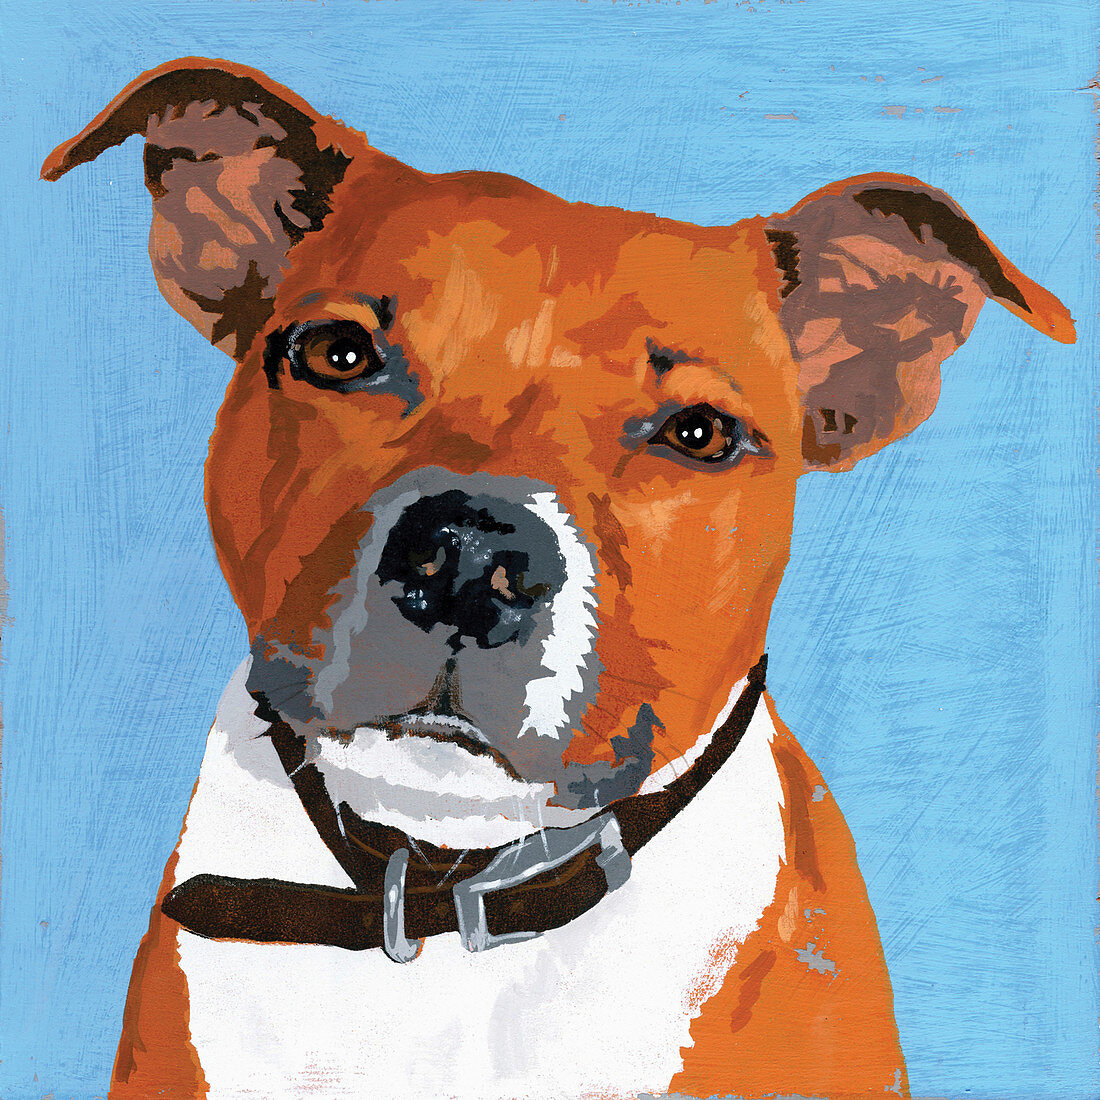 Pit Bull Terrier dog, illustration